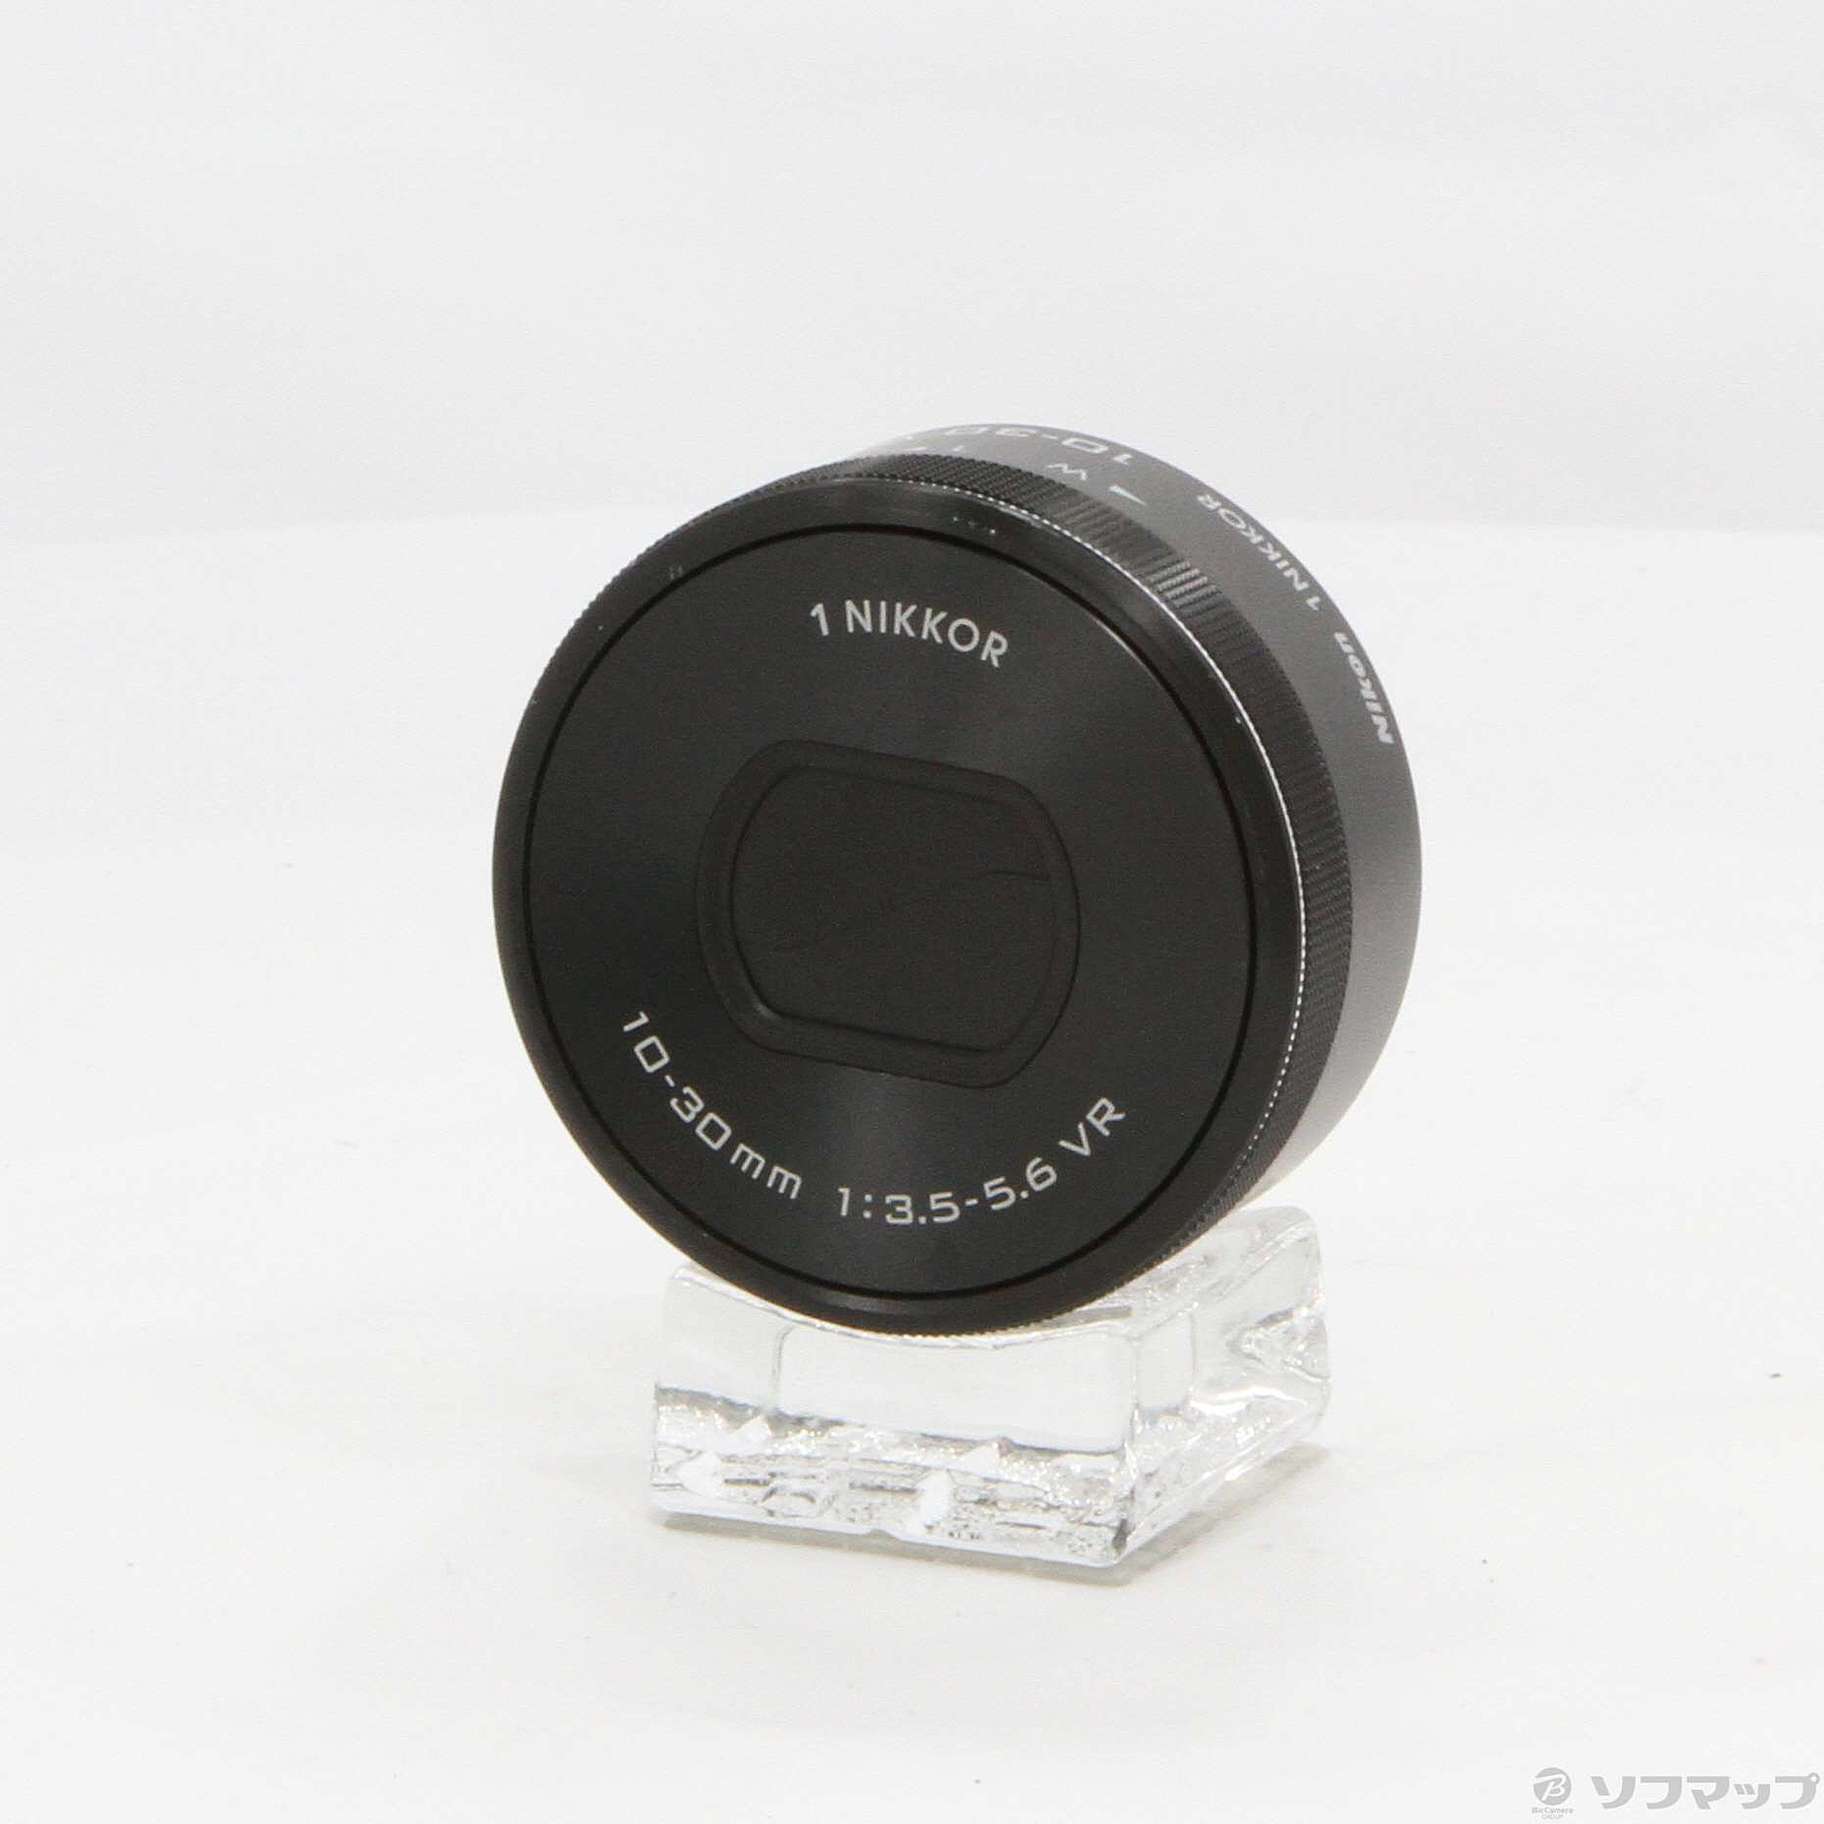 信頼】 ☆Nikon ニコン 1 NIKKOR 10-30mm F3.5-5.6 VR | tonky.jp